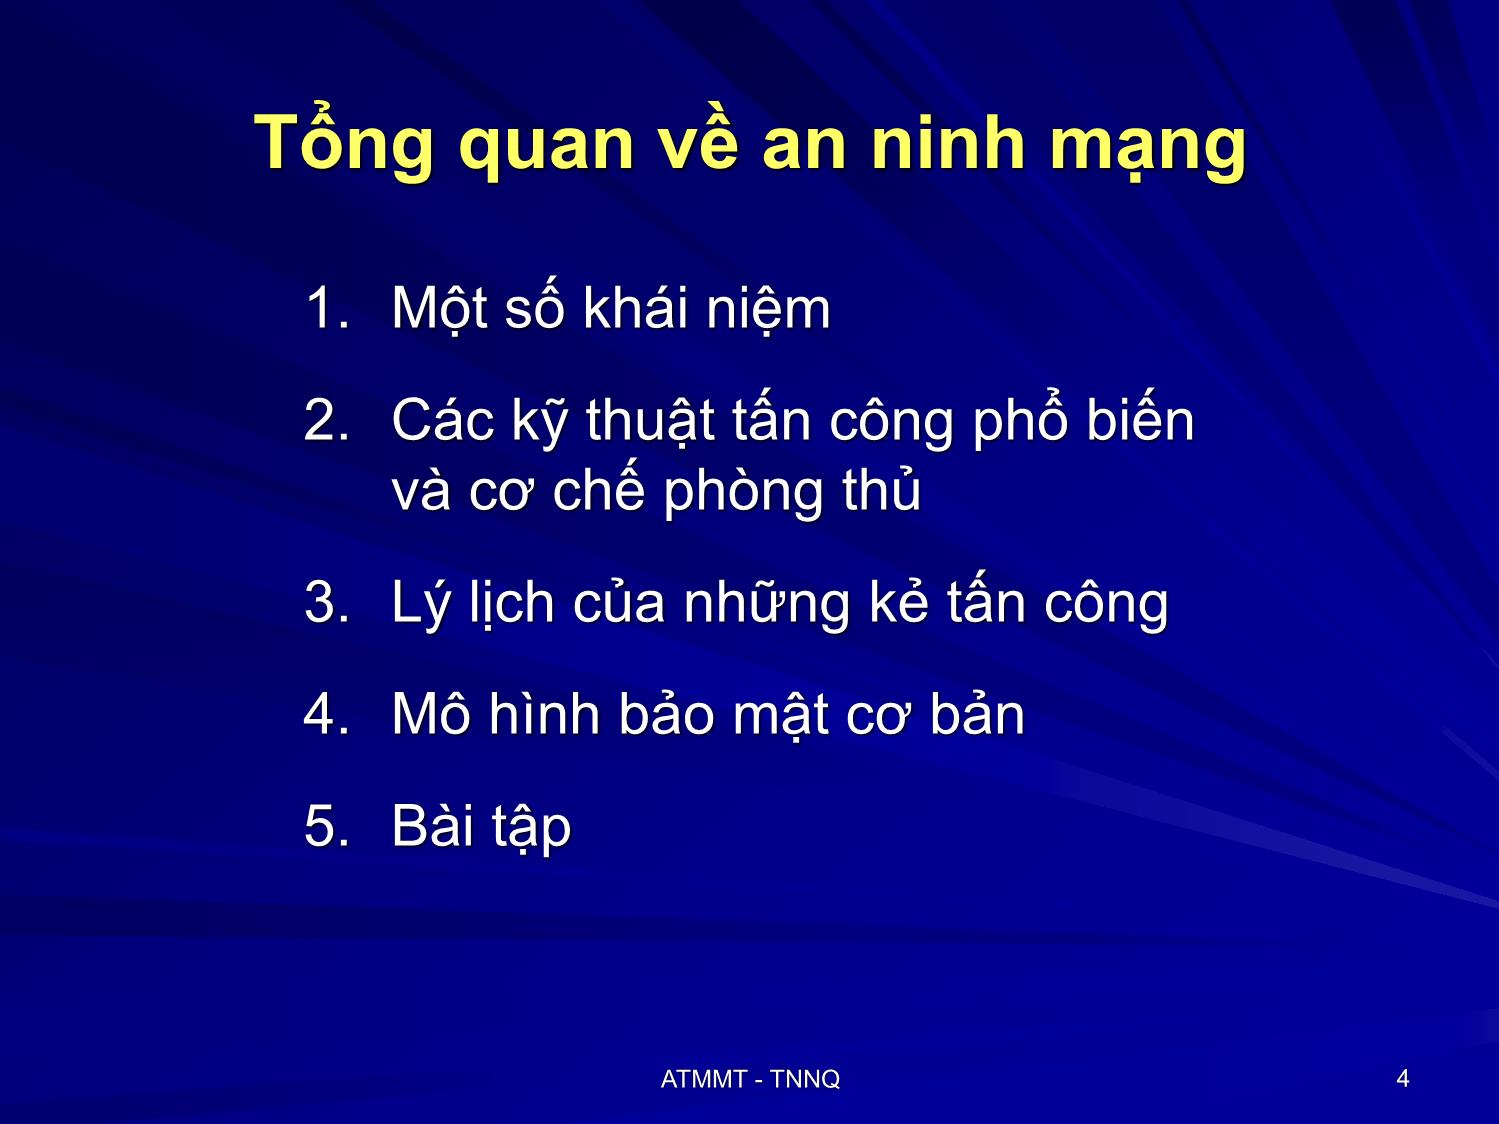 Bài giảng An toàn mạng máy tính - Bài 1: Tổng quan về an ninh mạng - Tô Nguyễn Nhật Quang trang 4